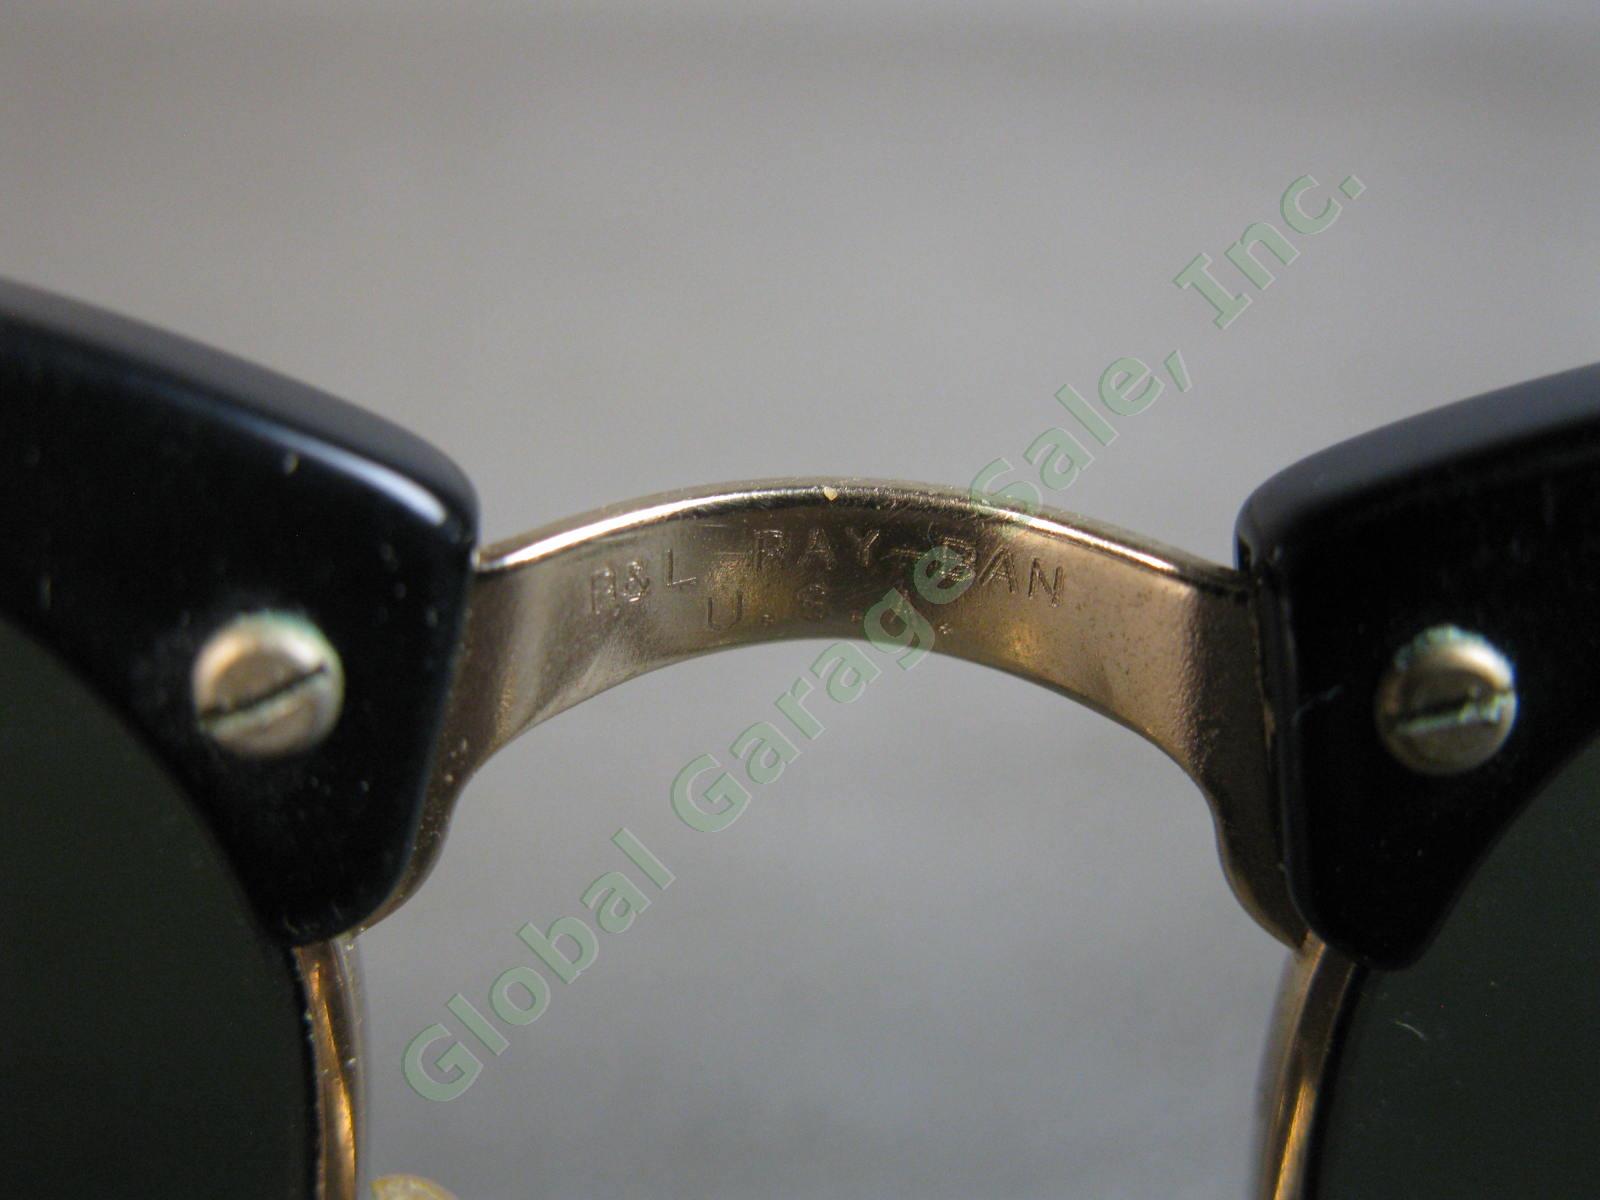 VTG B&L Ray-Ban ClubMaster Sunglasses Arista Ebony W1115 G15 RB3016 Bausch Lomb 7